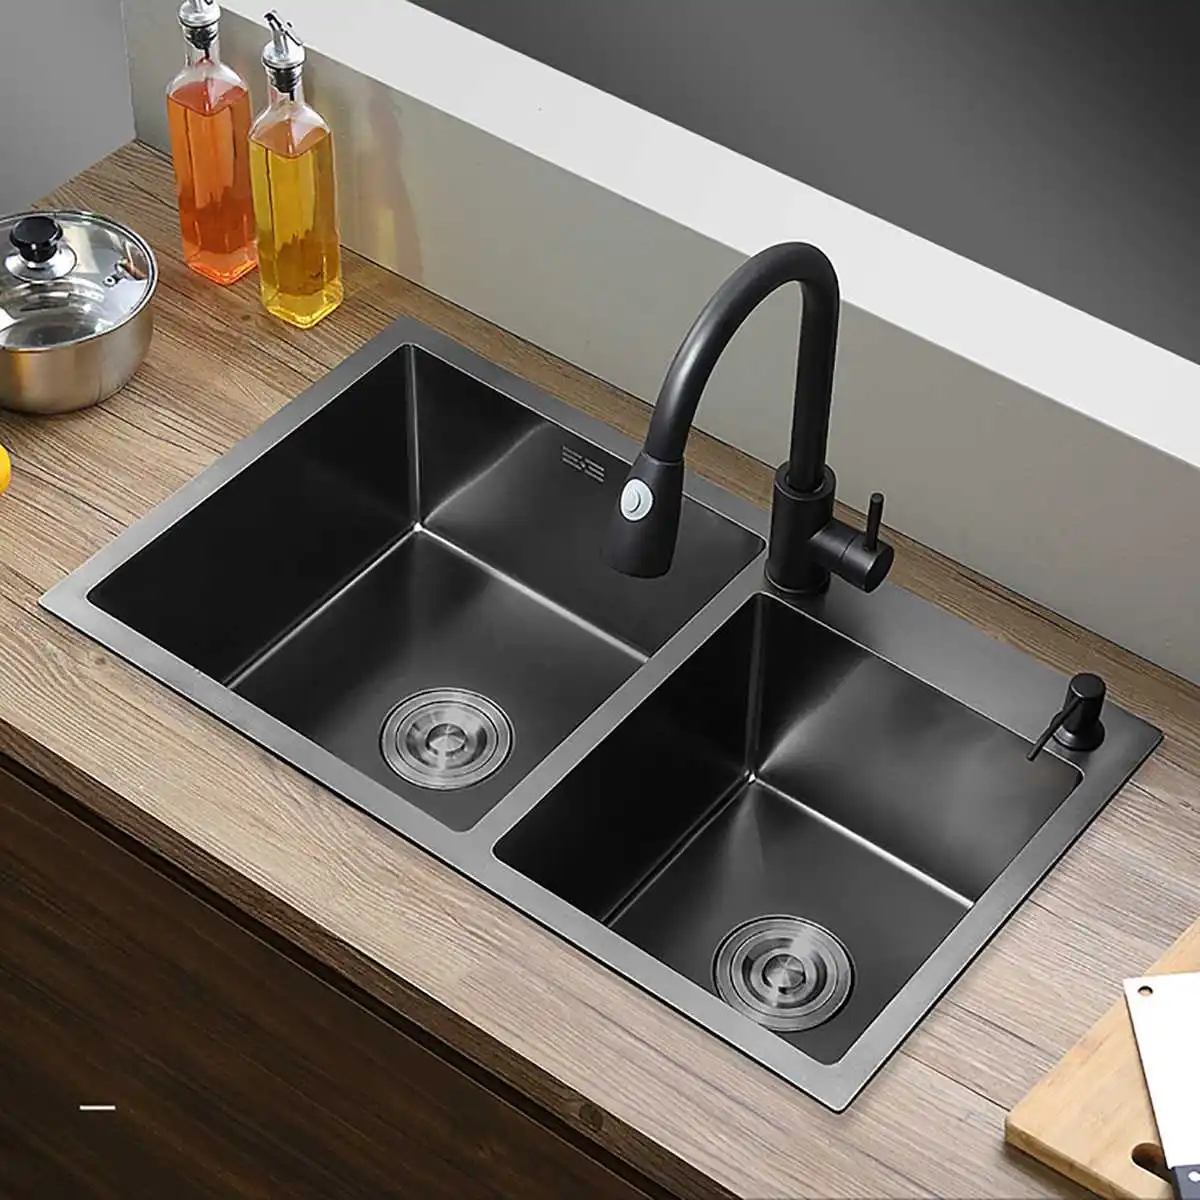 

720x400x220mm Нержавеющая сталь Dual-чаша Кухня раковина дома противоречивый кран для сливная корзина для мытья посуды бак Кухонный инвентарь 3 мм